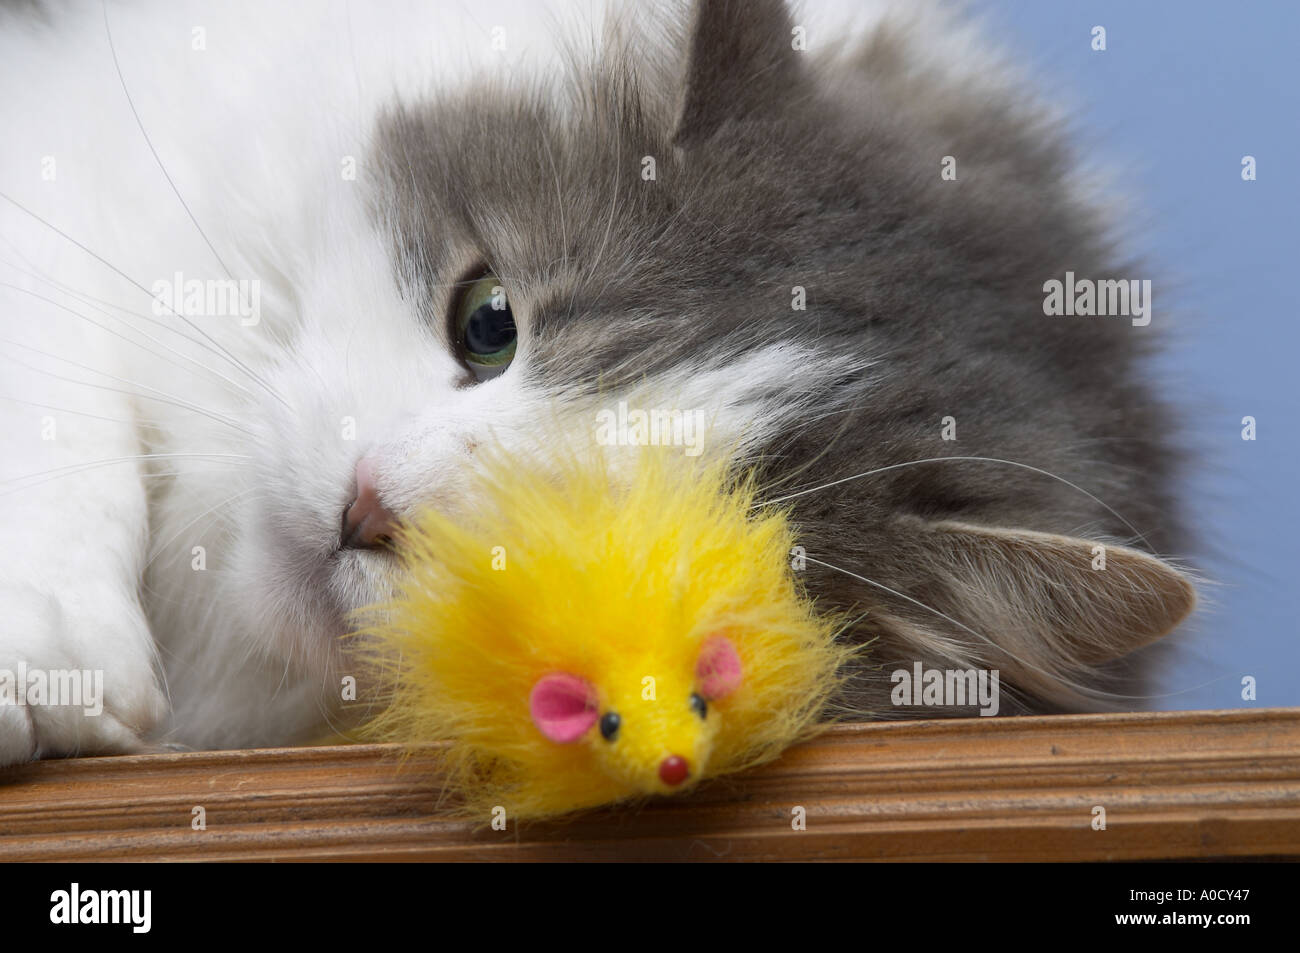 Suave gato de peluche de pelo largo gris y blanco (Felis catus) jugando con su ratón de juguete amarillo favorito Foto de stock